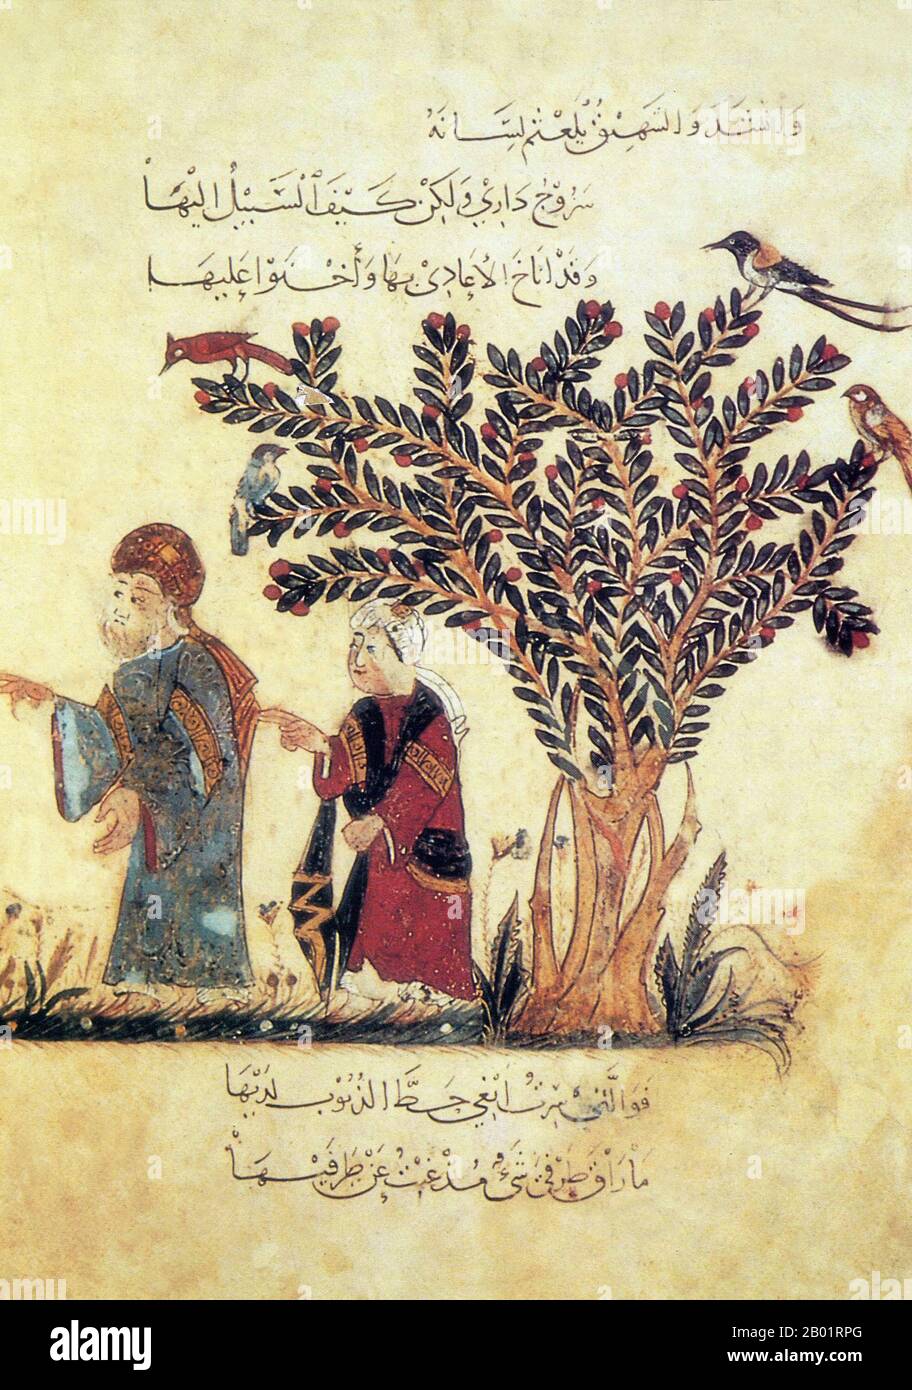 Iraq: Miniatura di Yahya ibn Mahmud al-Wasiti, 1237 d.C. Yahyâ ibn Mahmûd al-Wâsitî è stato un artista arabo islamico del XIII secolo. Al-Wasiti è nato a Wasit, nel sud dell'Iraq. Era noto per le sue illustrazioni del Maqam di al-Hariri. I Maqāma (letteralmente "assemblee") sono un genere letterario arabo (originariamente) di prosa rimata con intervalli di poesia in cui la stravaganza retorica è evidente. Si dice che l'autore del X secolo Badī' al-Zaman al-Hamadhāni abbia inventato la forma, che fu estesa da al-Hariri di Bassora nel secolo successivo. Foto Stock